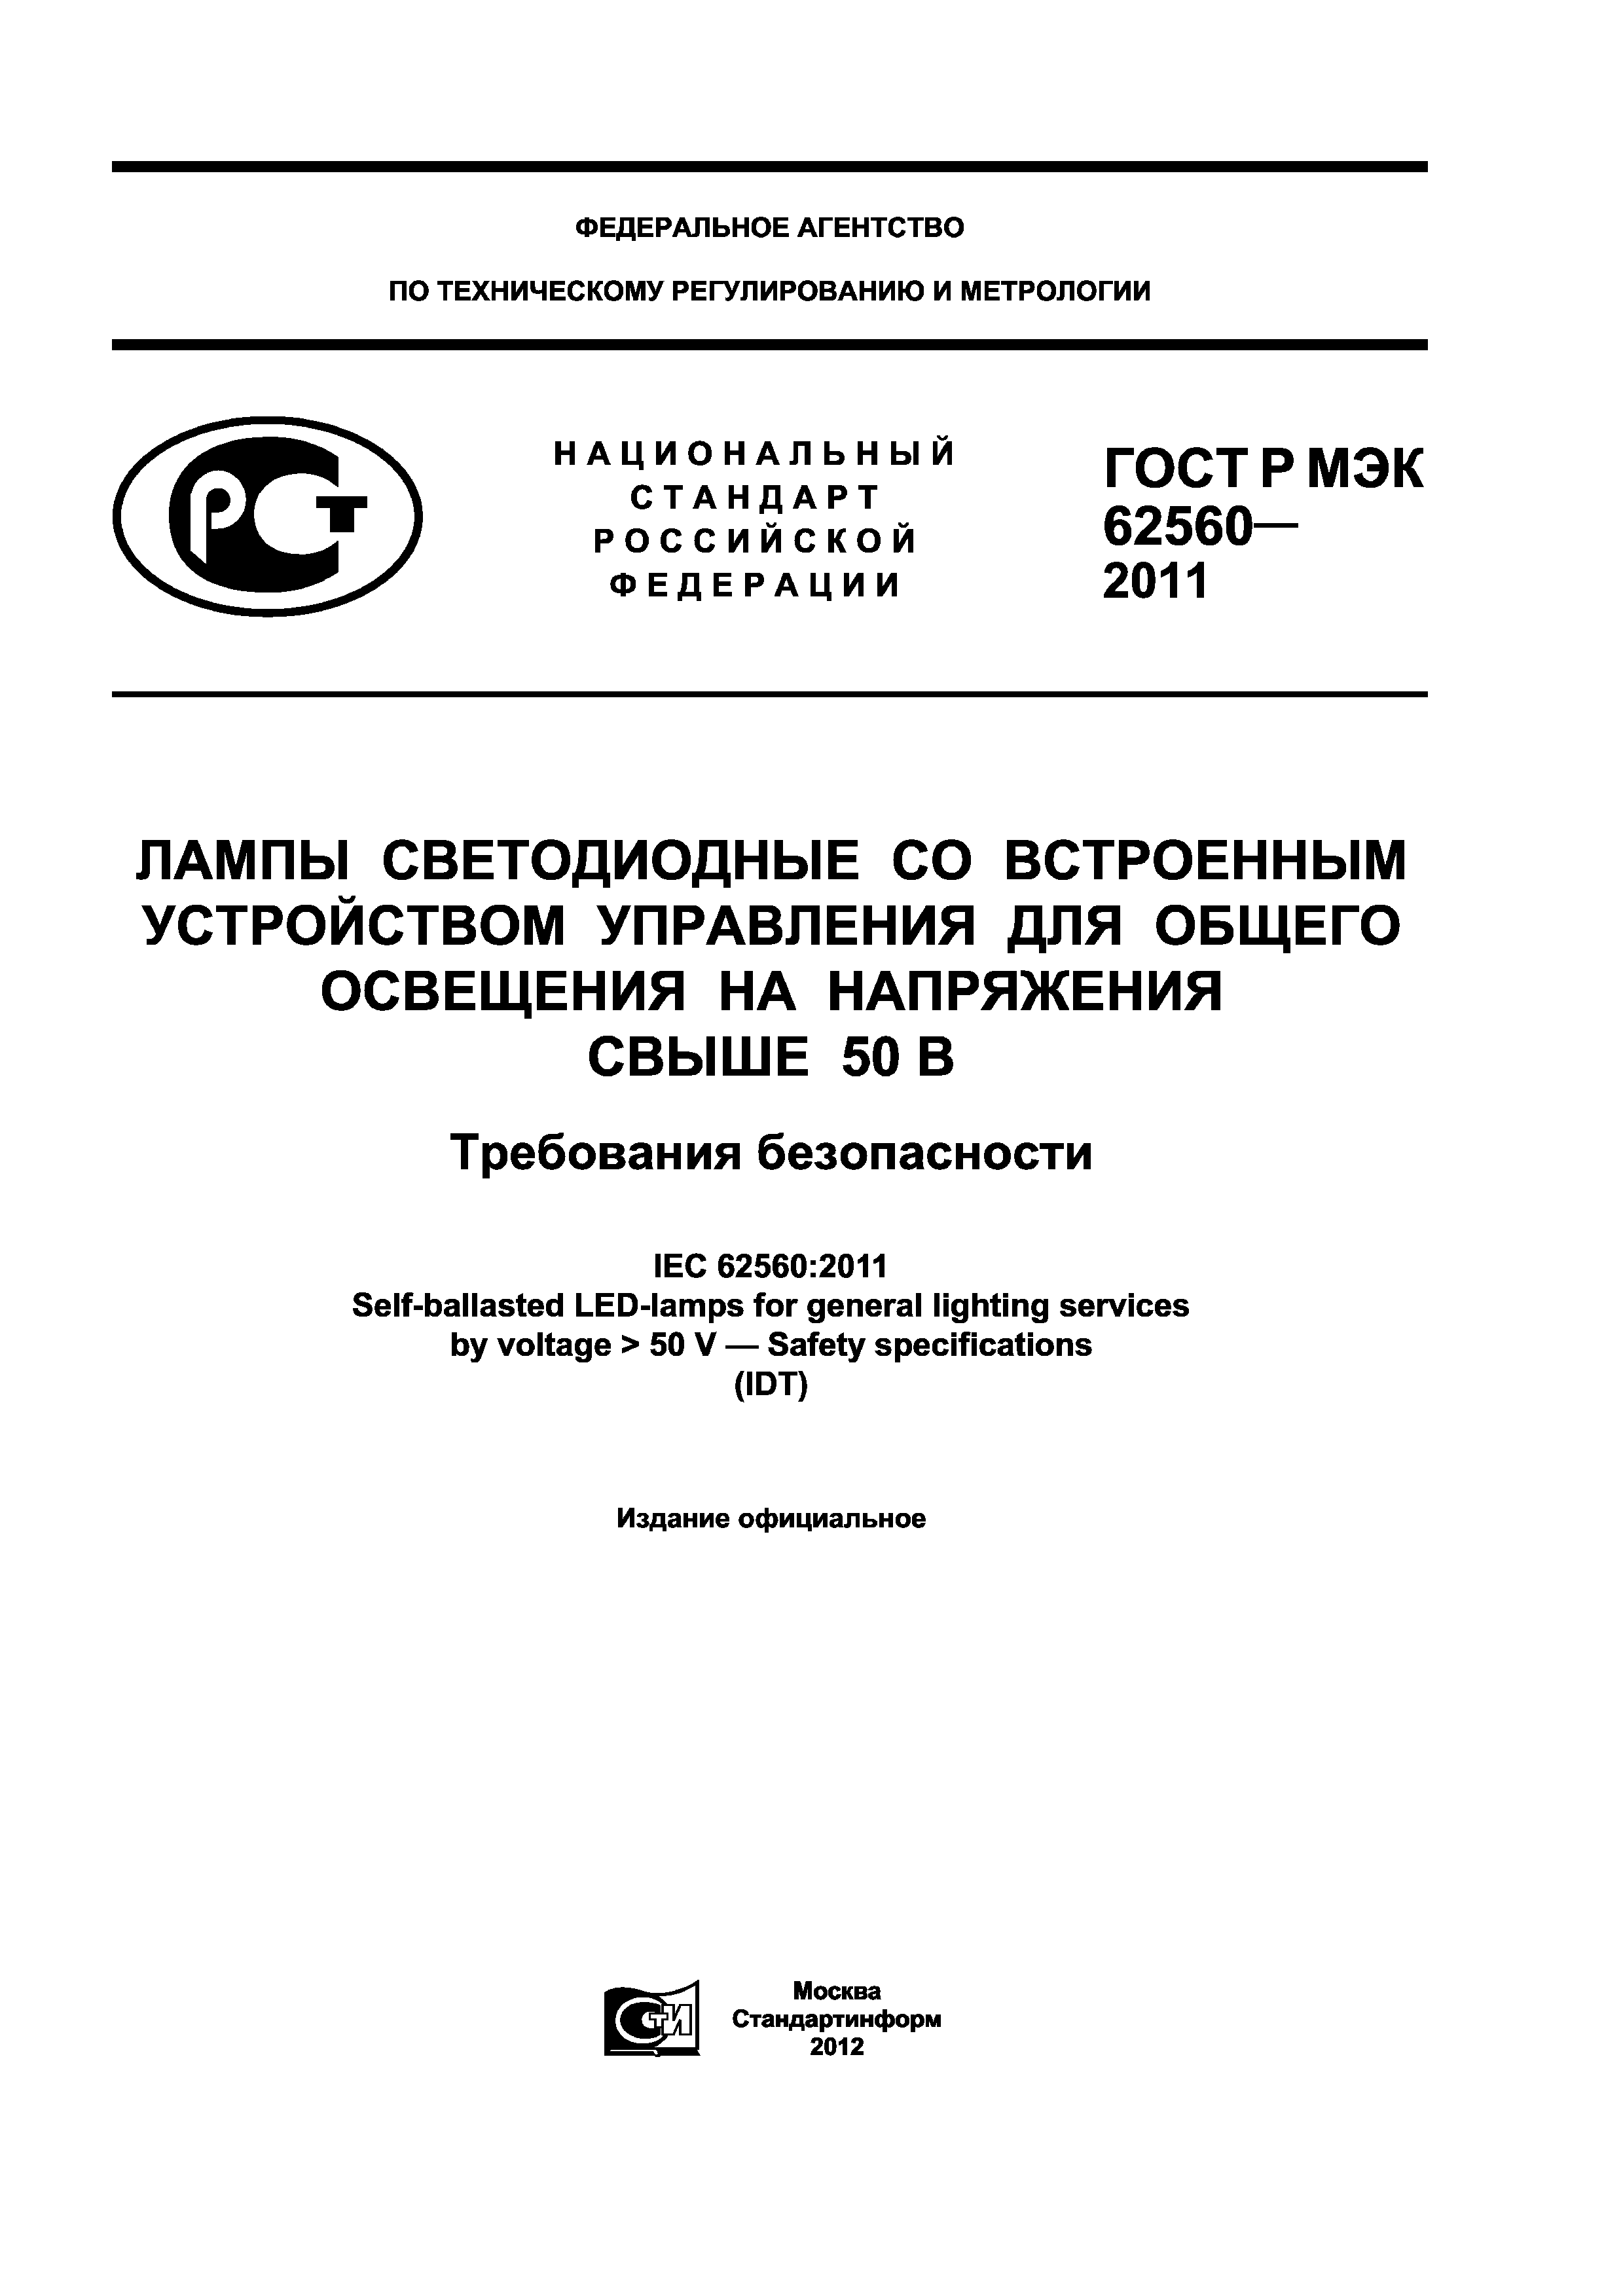 ГОСТ Р МЭК 62560-2011